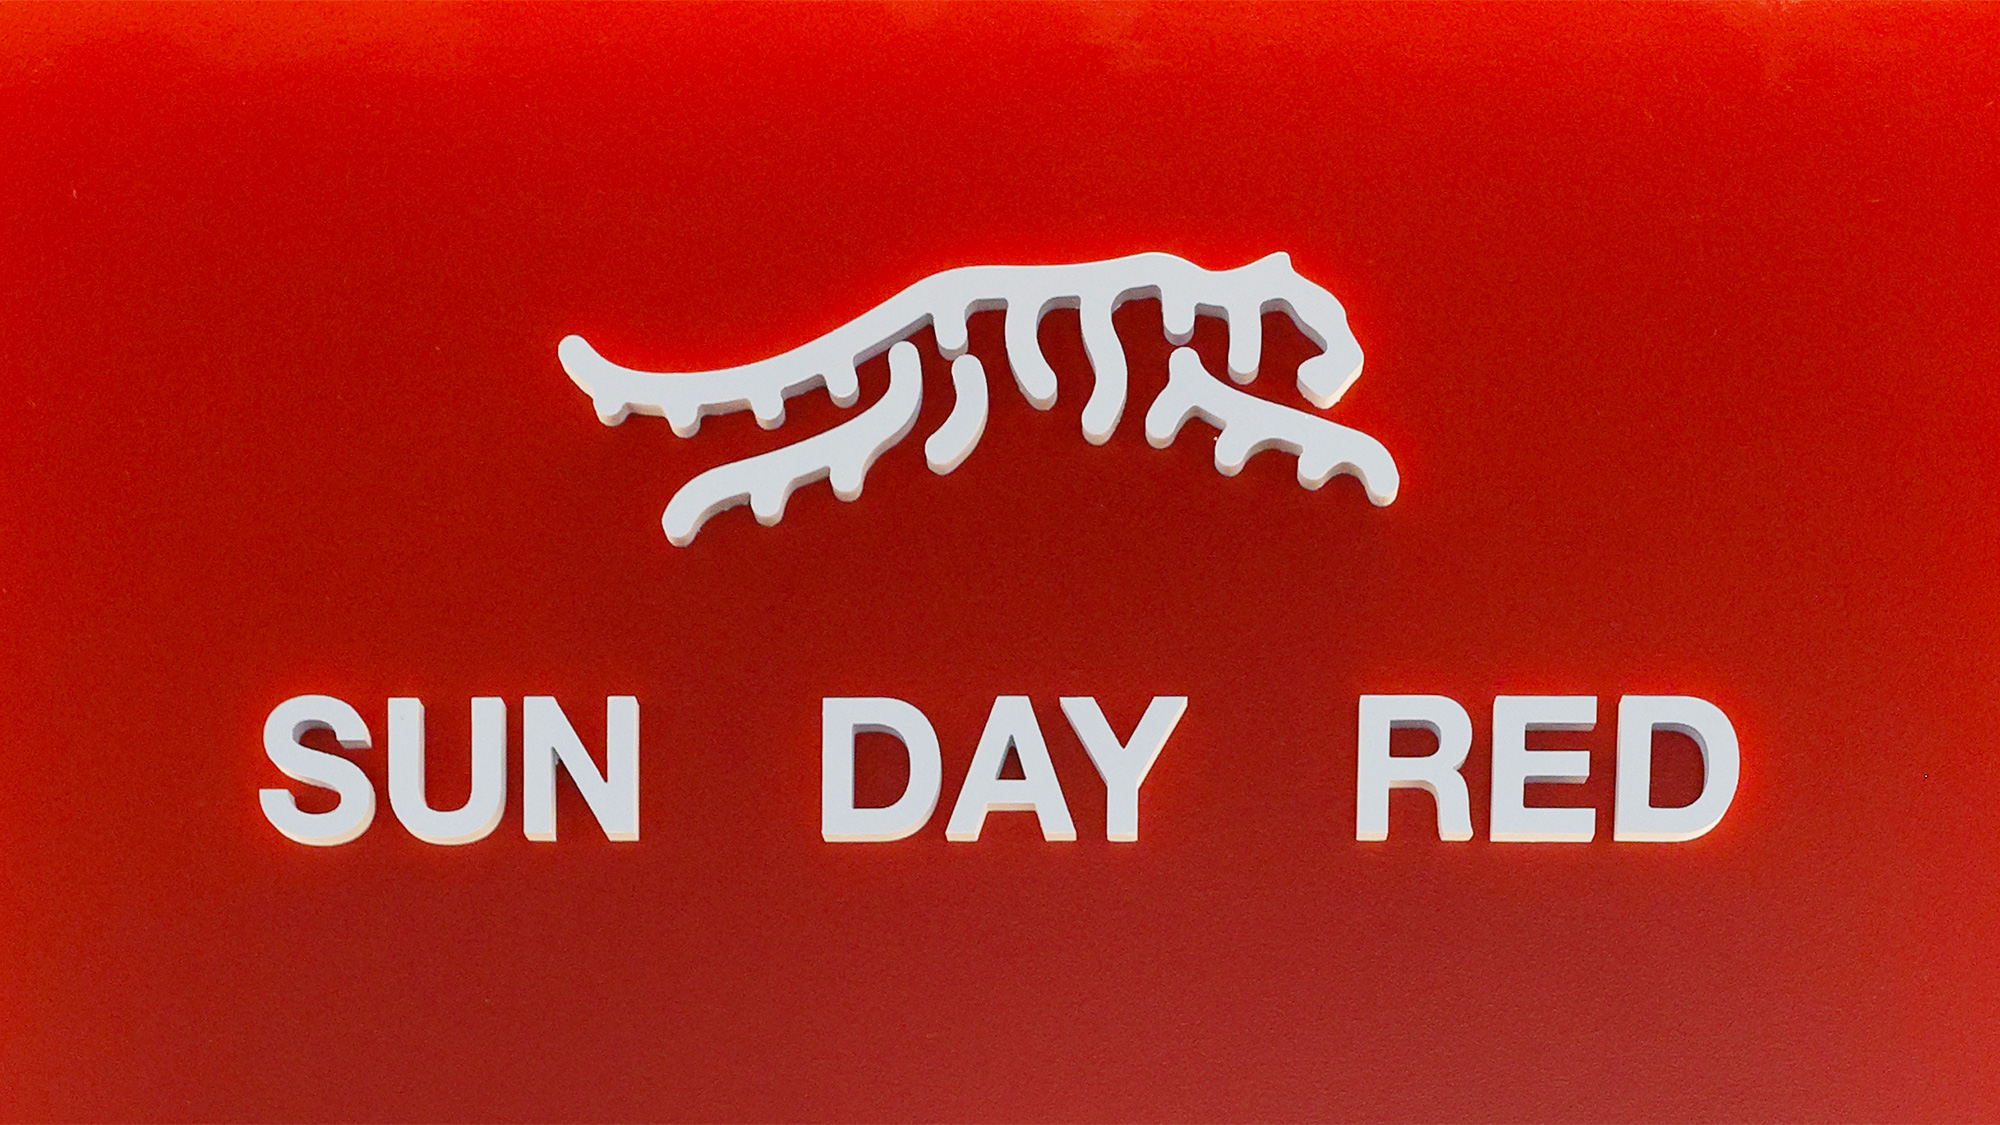 Sunday Red Sun Day